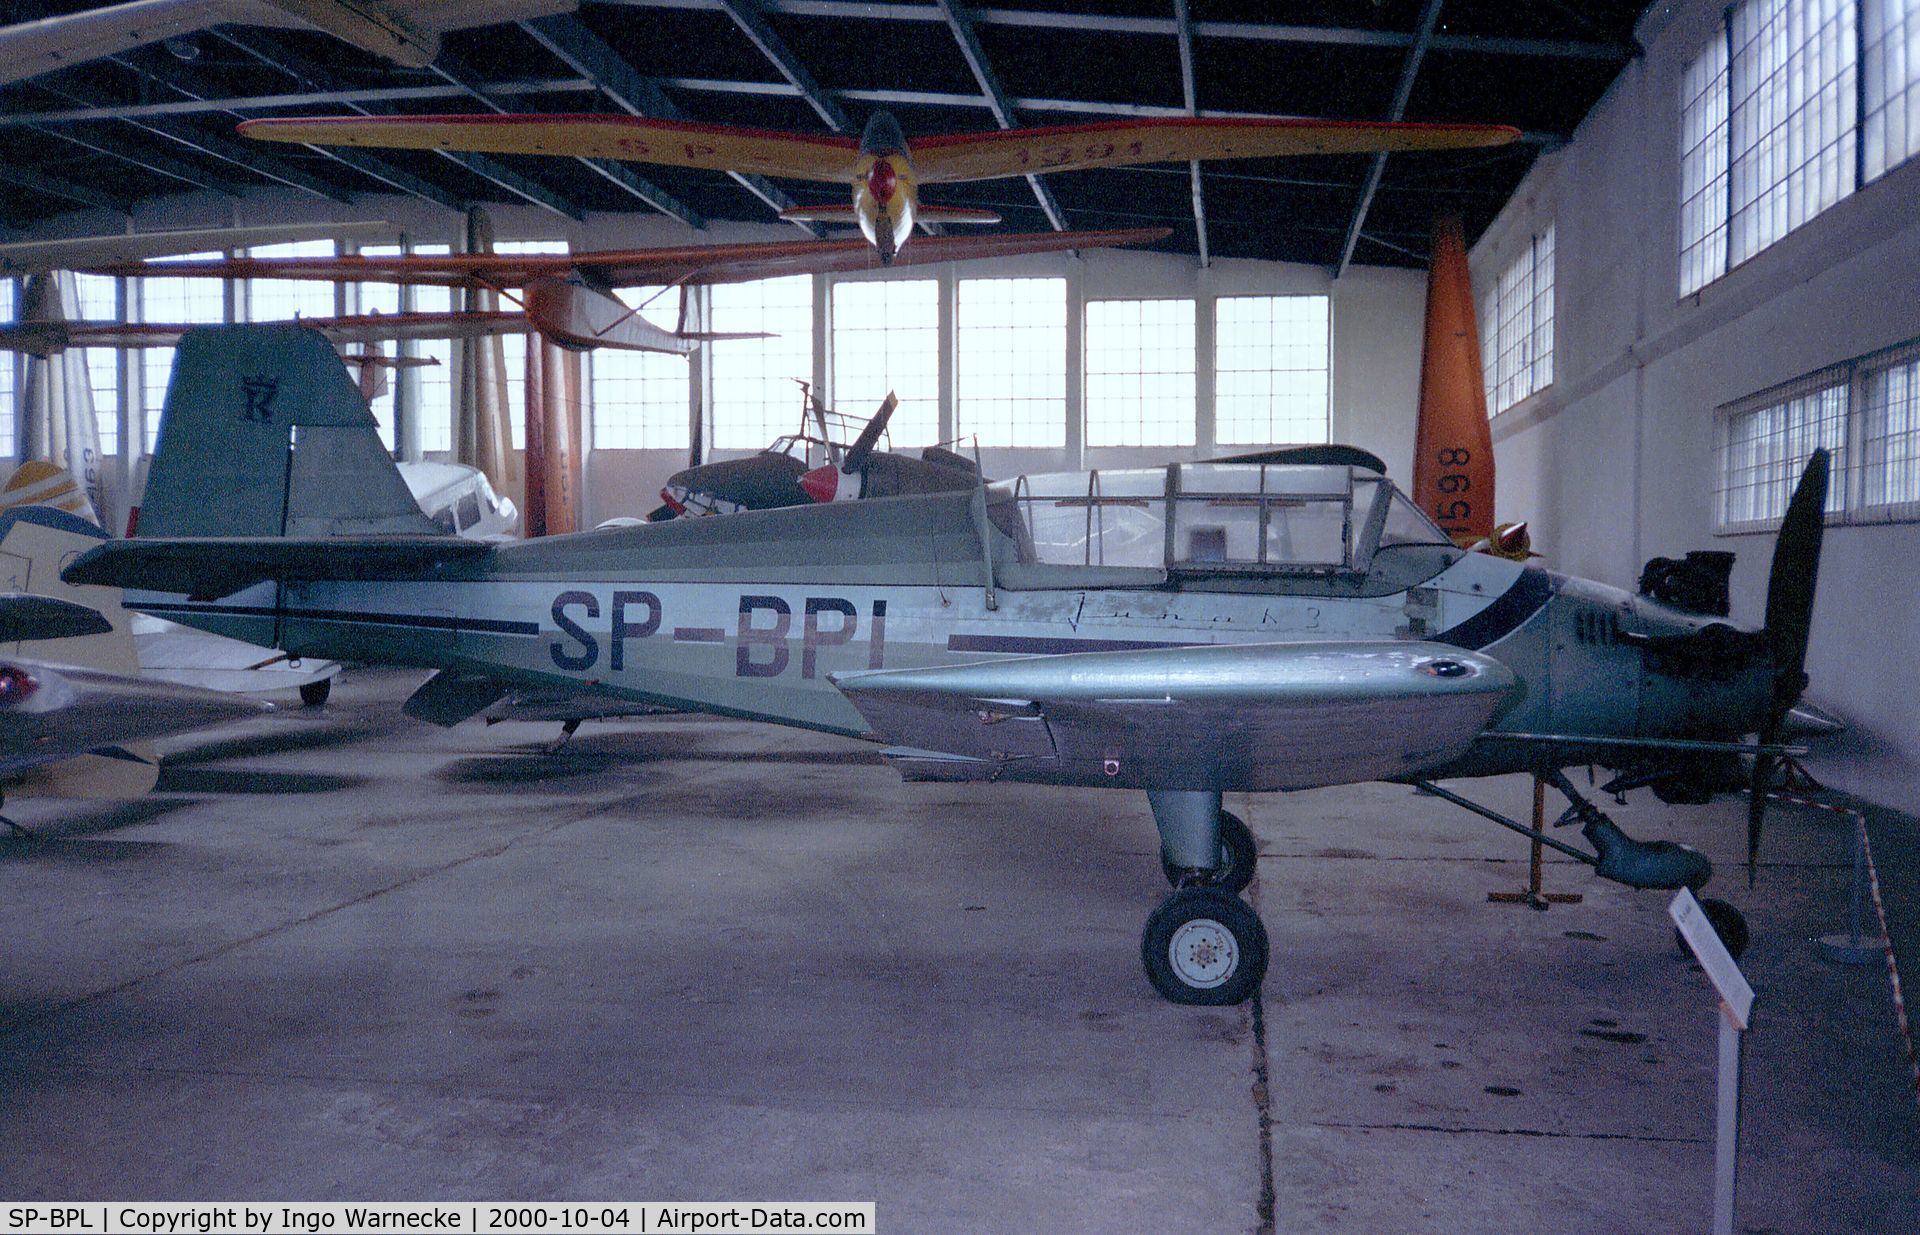 SP-BPL, LWD Junak 3 C/N 13-9578, Lotnicze Warsztaty Doswiadczalne L.W.D. Junak 3 at the Muzeum Lotnictwa i Astronautyki, Krakow